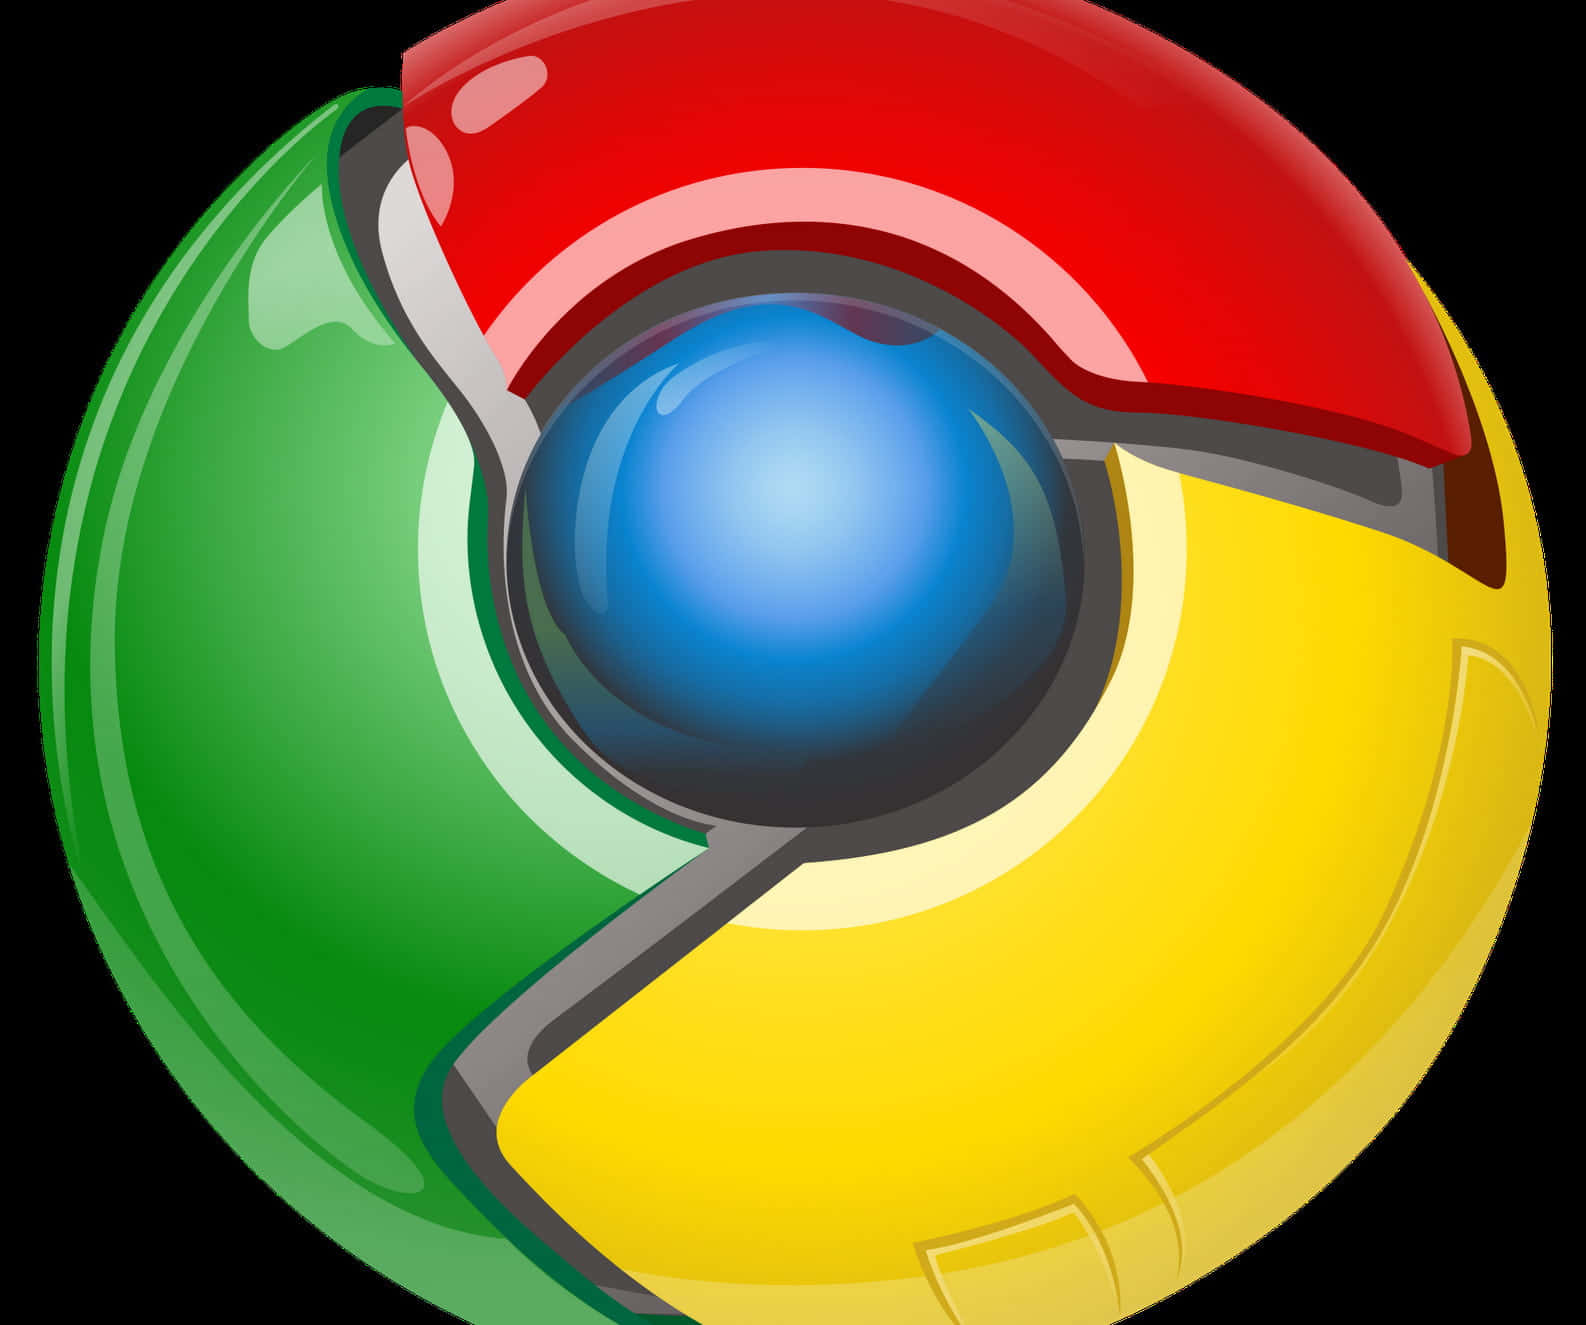 Genießensie Das Surfen Mit Google Chrome - Dem Führenden Webbrowser.